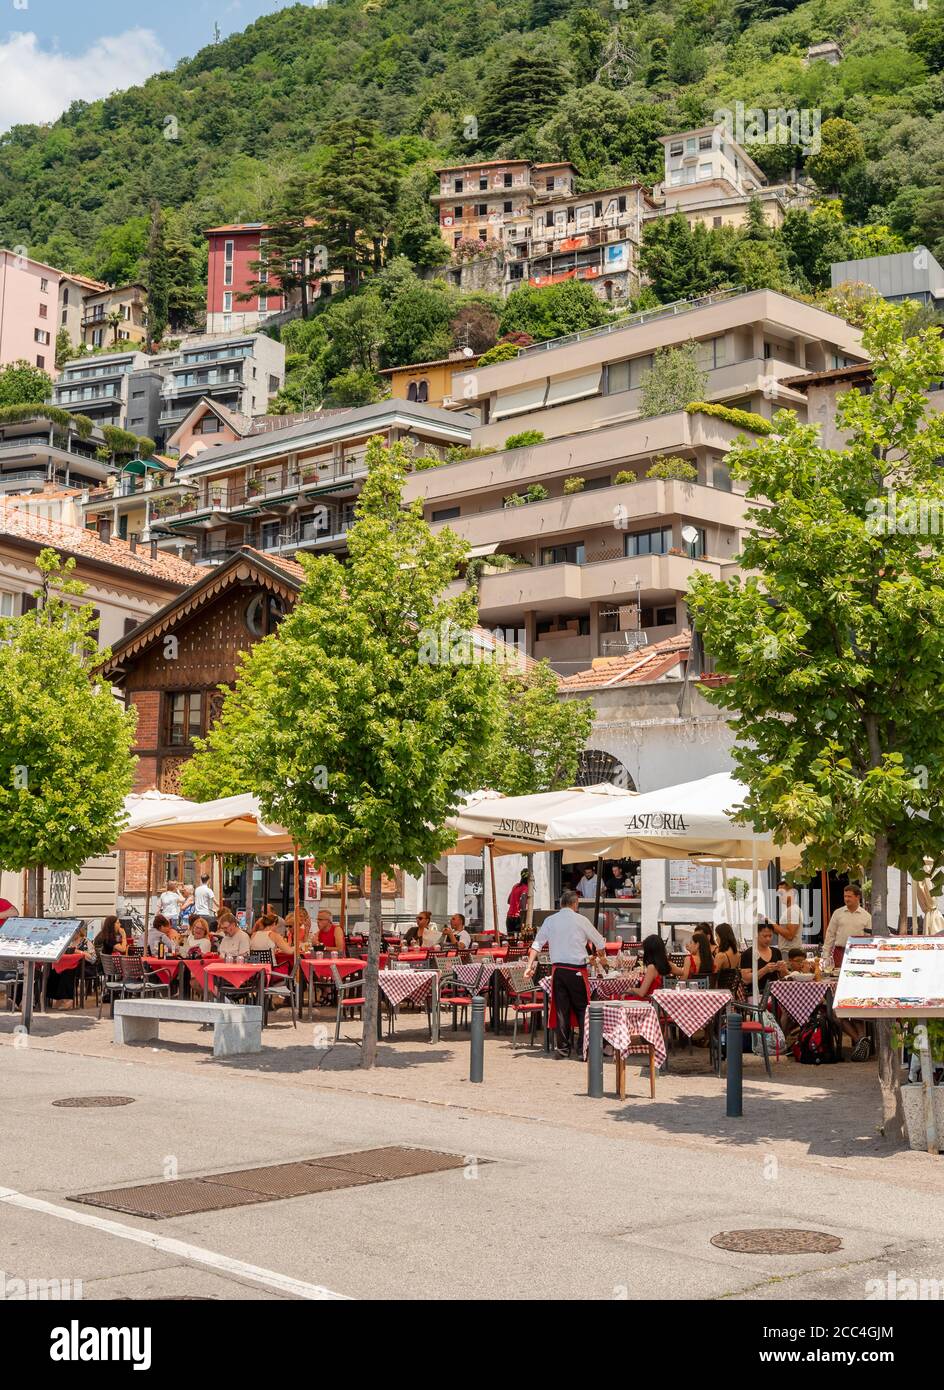 Como, Lombardía, Italia - 18 de junio de 2019: Personas que disfrutan de bares y restaurantes al aire libre en el paseo marítimo del Lago como en un caluroso día de verano en la ciudad de como, ITA Foto de stock